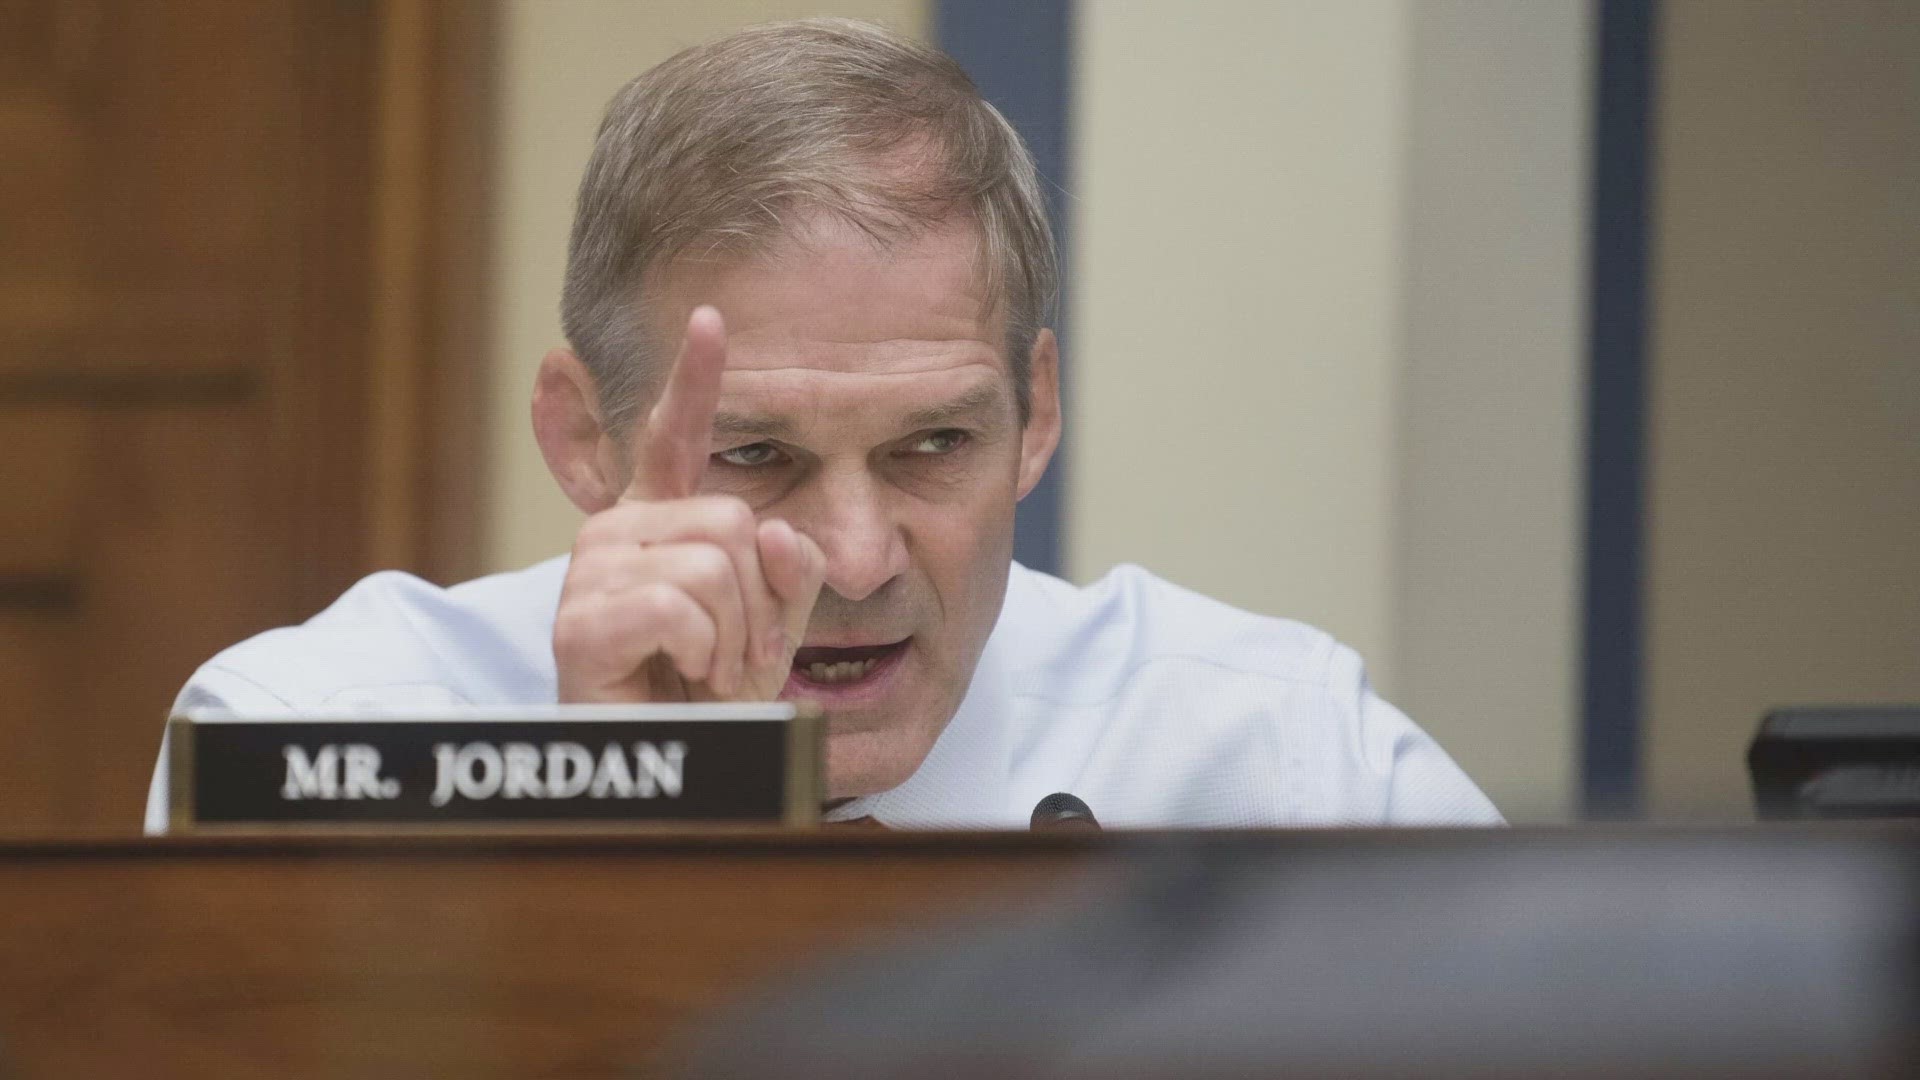 Jim Jordan gets Texas support in House Speaker bid